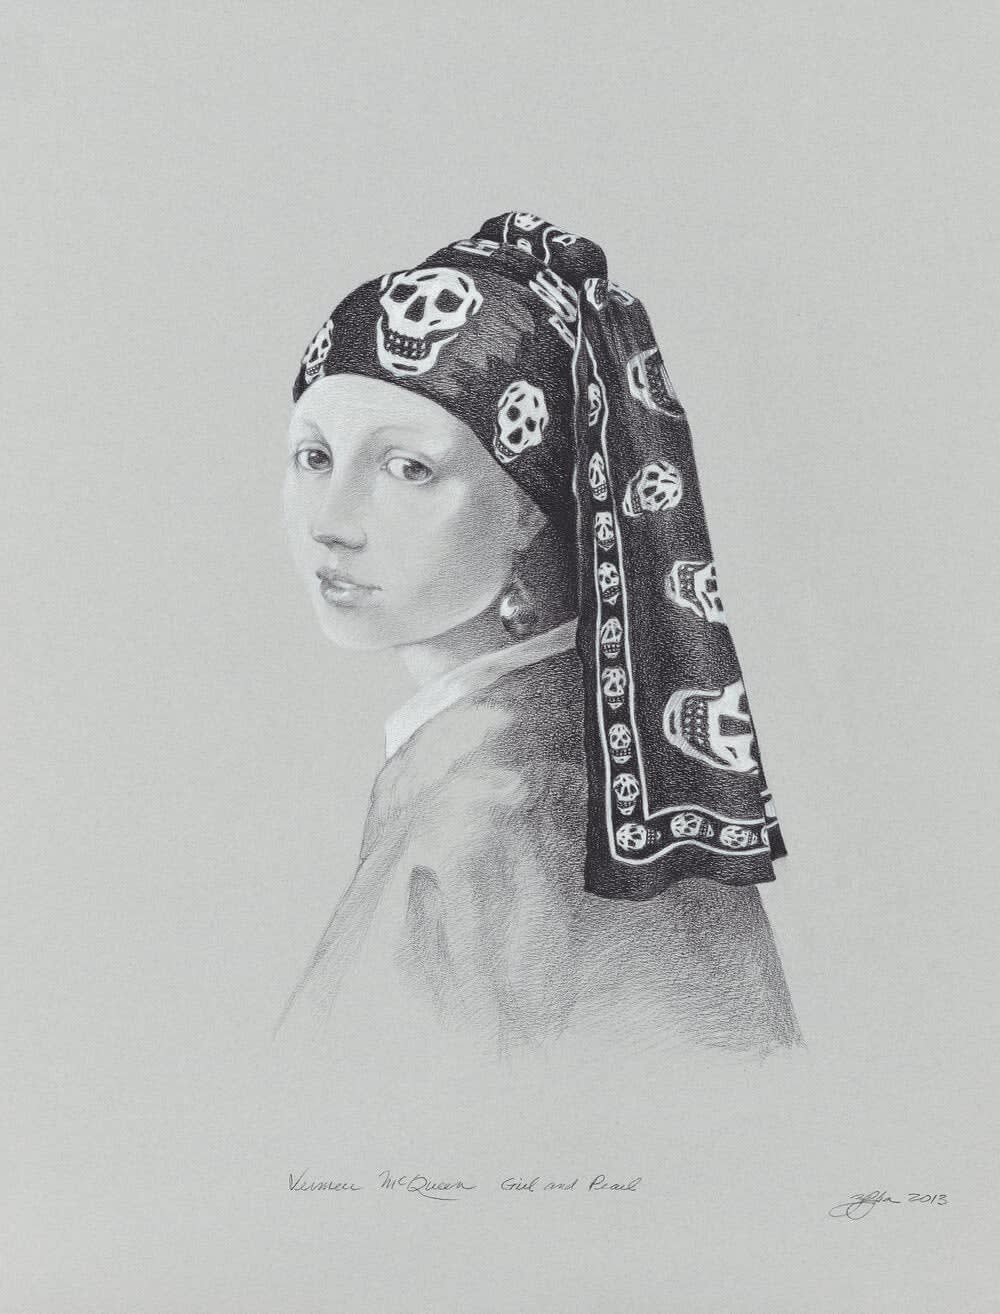 ZELJKA ALOSINAC, Vermeer/McQueen Girl and Pearl